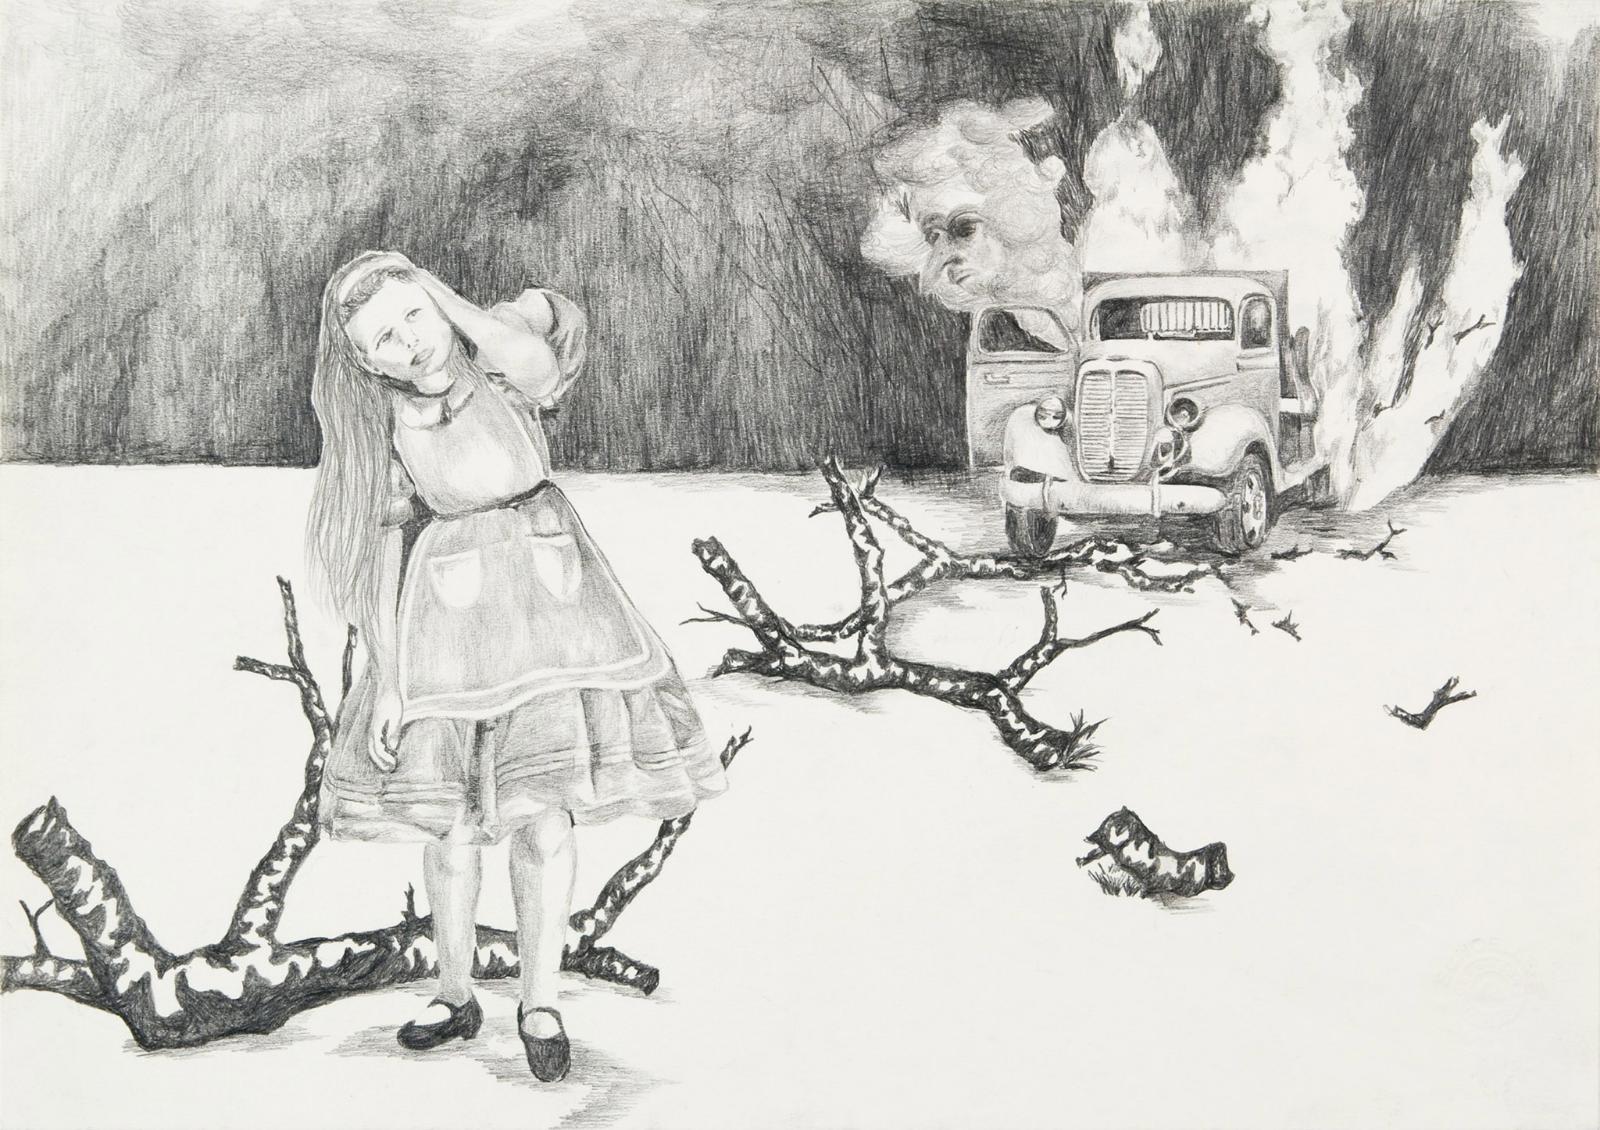 Uta Siebert, Serie Peripherie (Explosion), 2011, Grafit auf Papier, 21 cm x 30 cm, Preis auf Anfrage, siu014kü